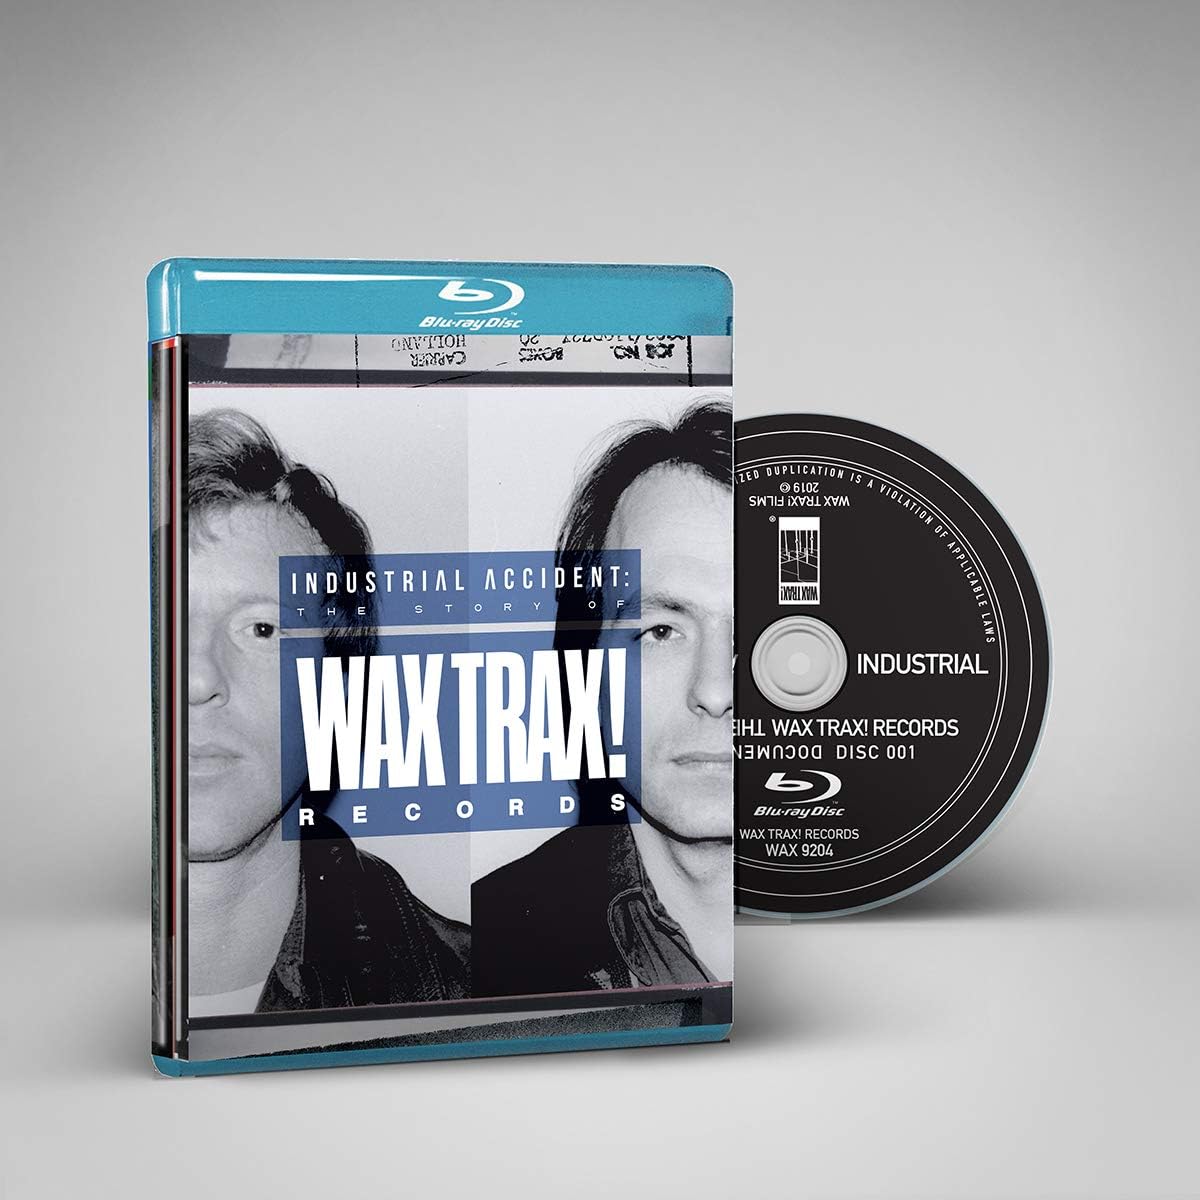 DVD/BluRay – Encore Records Ltd